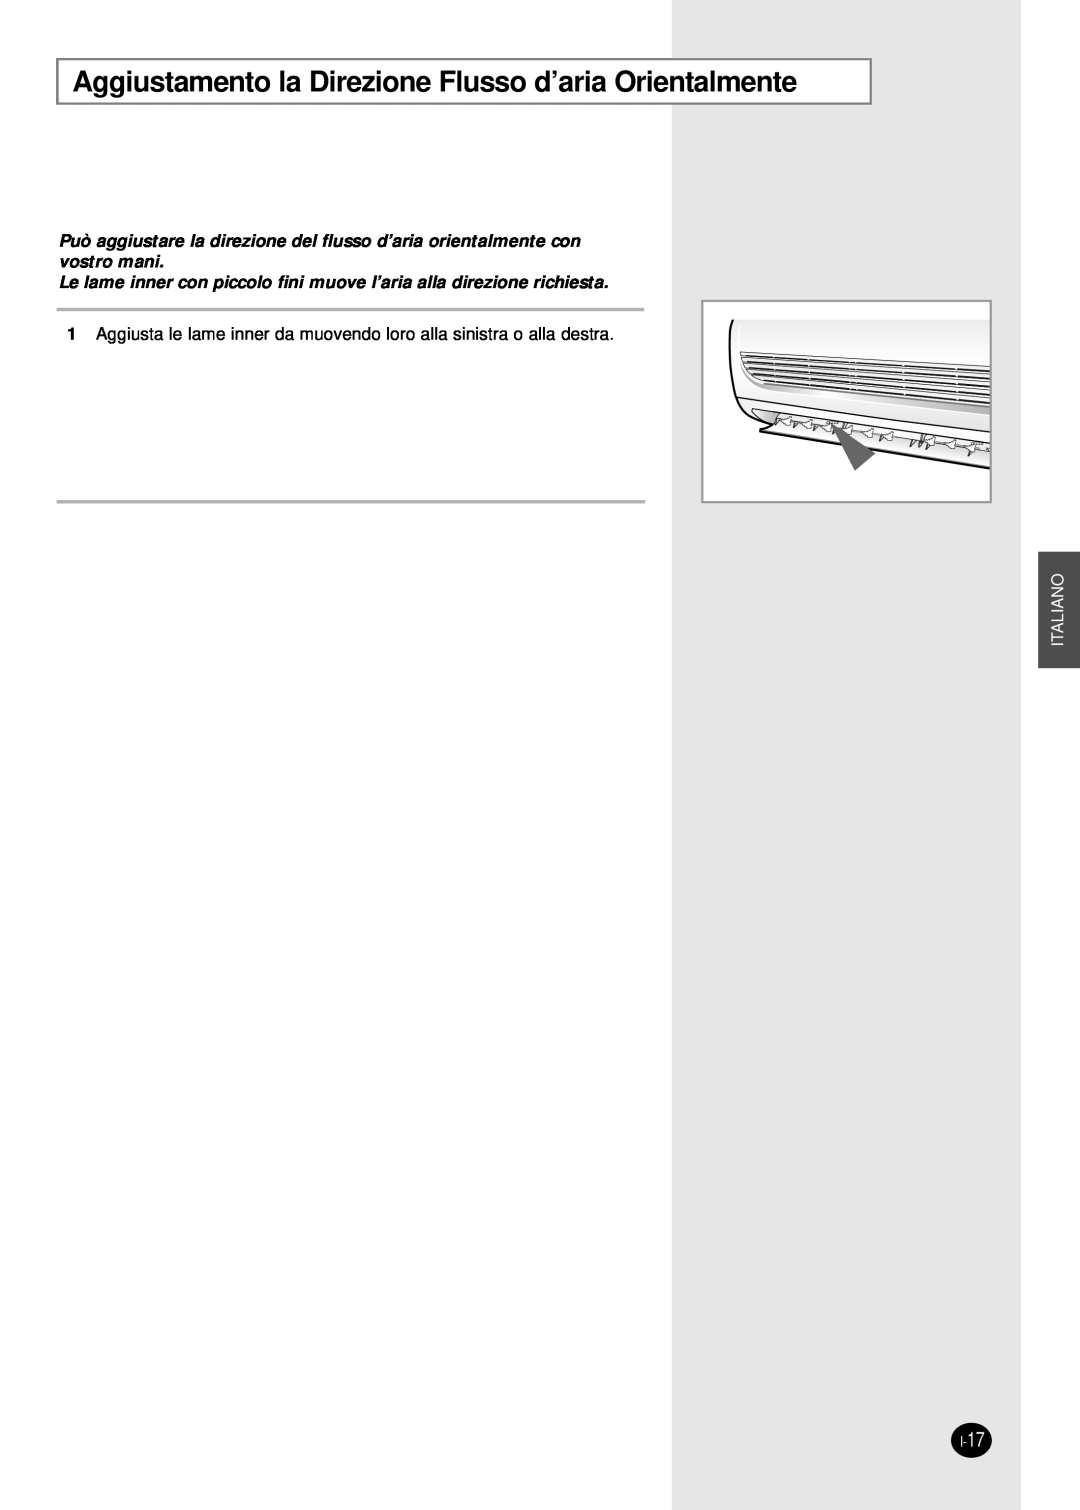 Samsung SH18AW6X, SH24AW6X manual Aggiustamento la Direzione Flusso d’aria Orientalmente, Italiano, I-17 